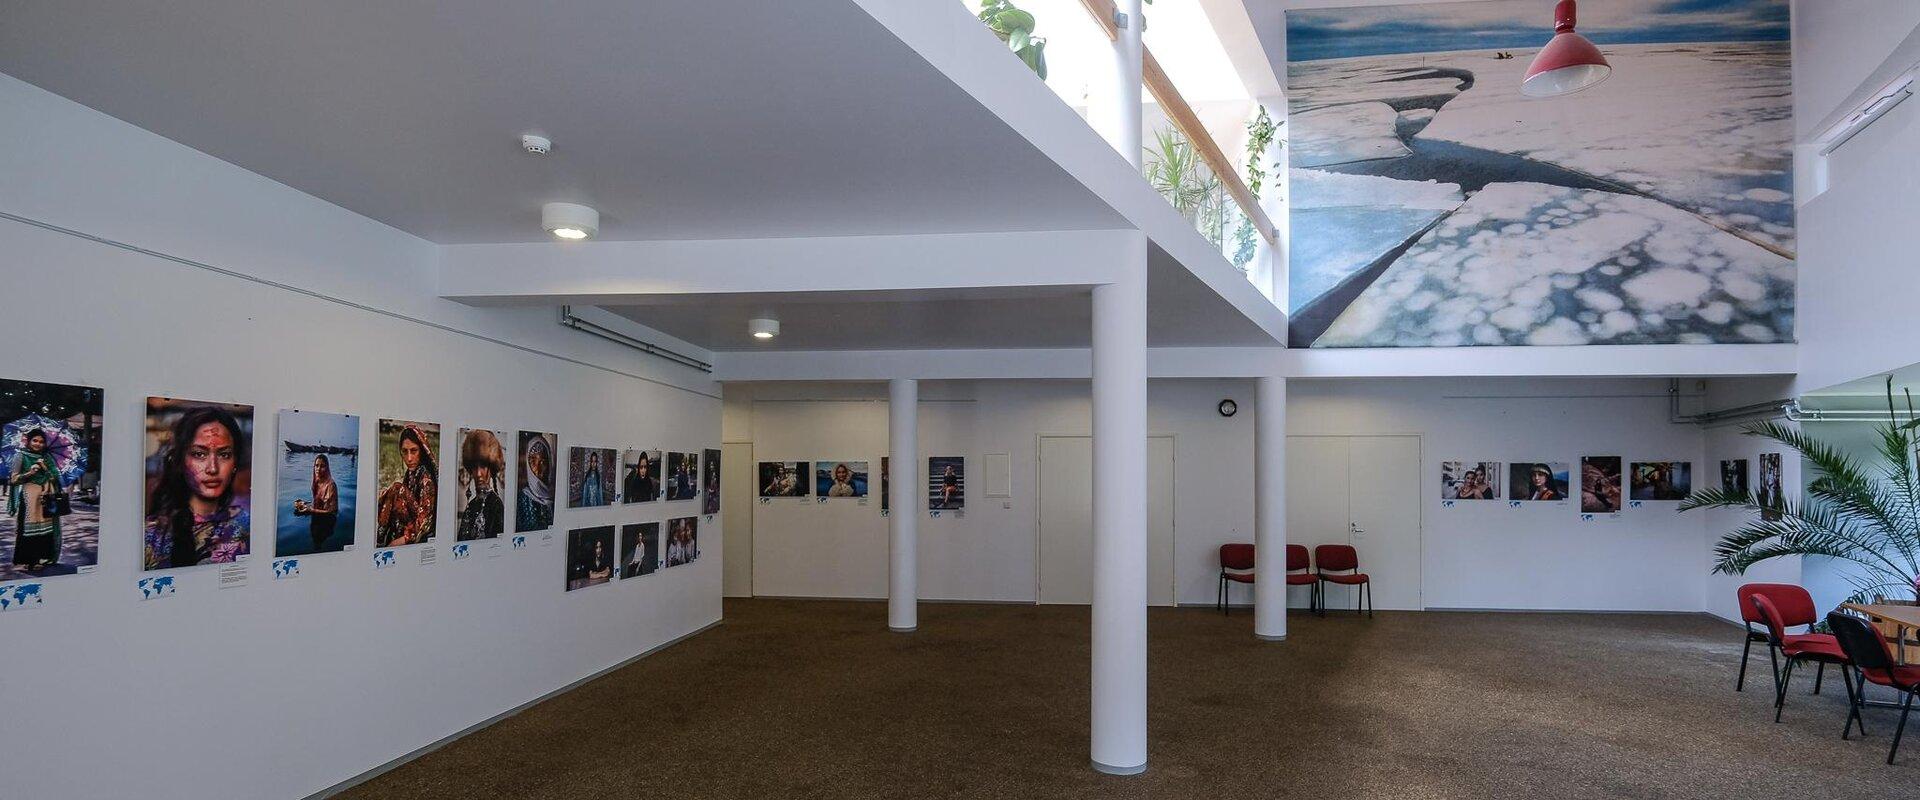 Im Foyer des Erdgeschosses des Gemeinschaftshauses von Kihnu sind die wechselnden Ausstellungen für alle Besucher geöffnet und der Eintritt ist kosten